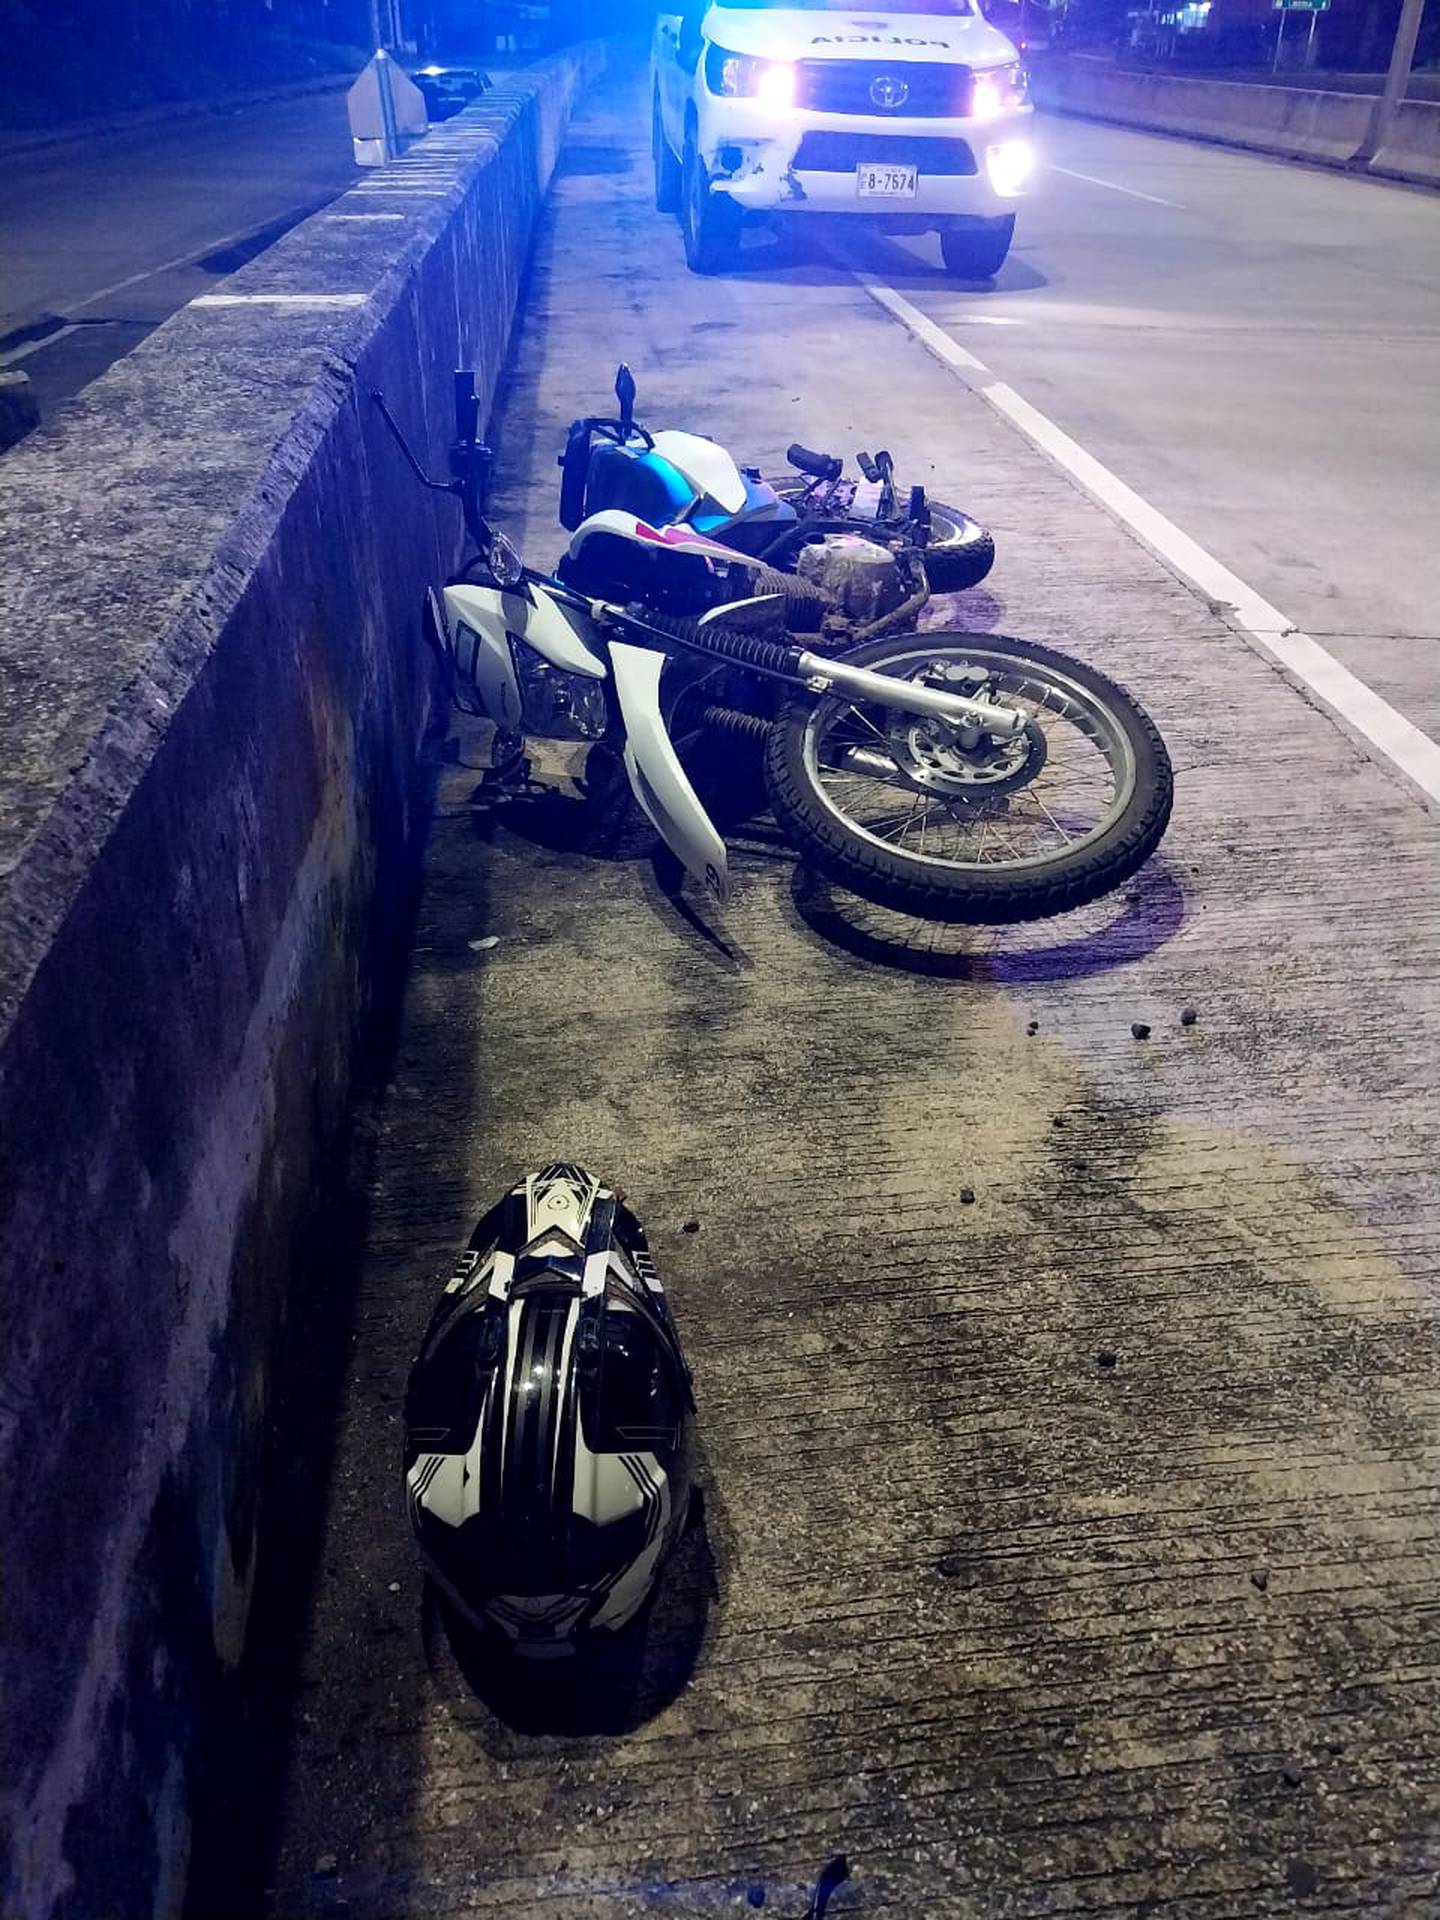 Uno de los sospechosos se accidentó cuando trató de darse a la fuga en esta moto. Foto MSP.